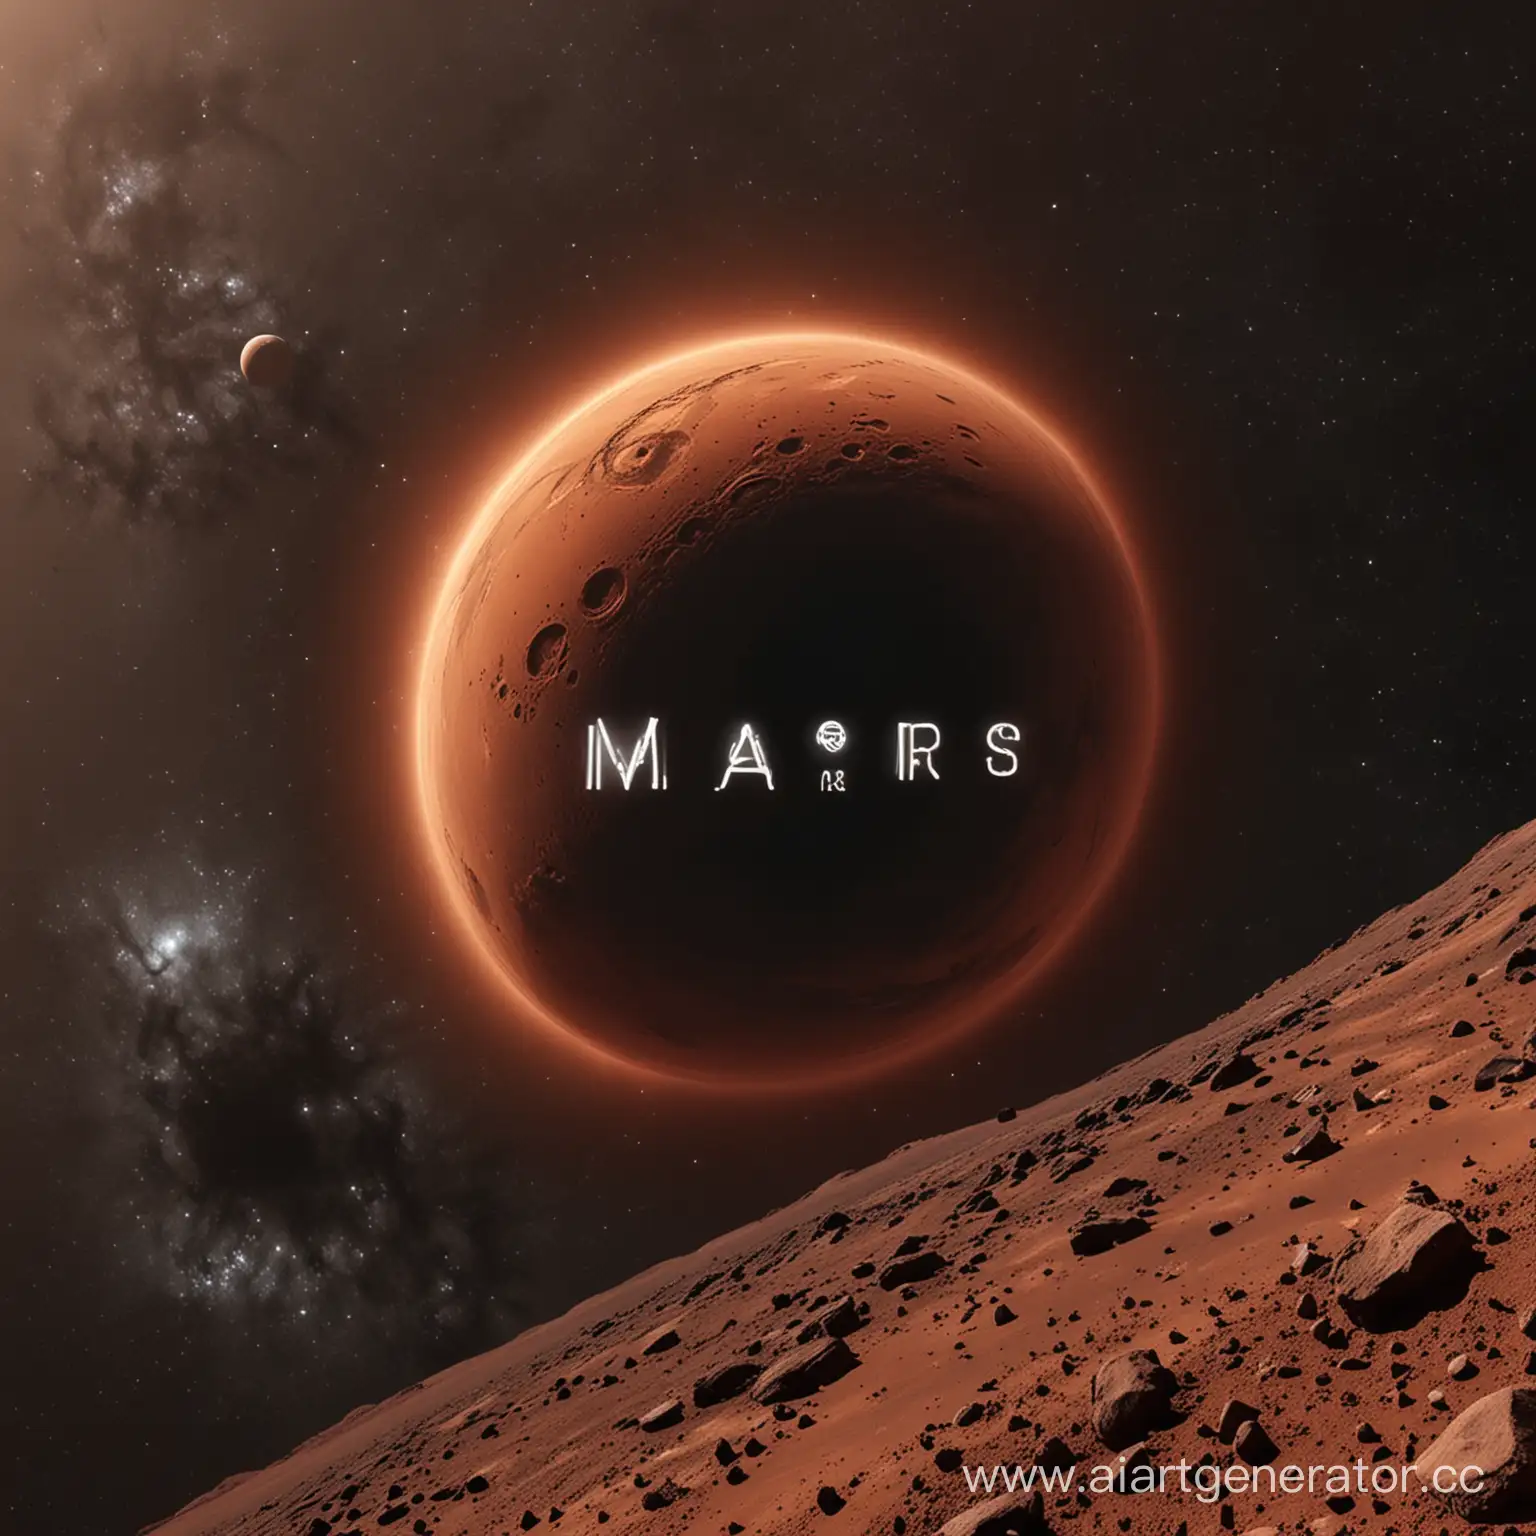 Марс, на фоне чёрная дыра, перед Марсом задекларированная надпись GMD MARS которая отлично вписывается по цвету в окружение.